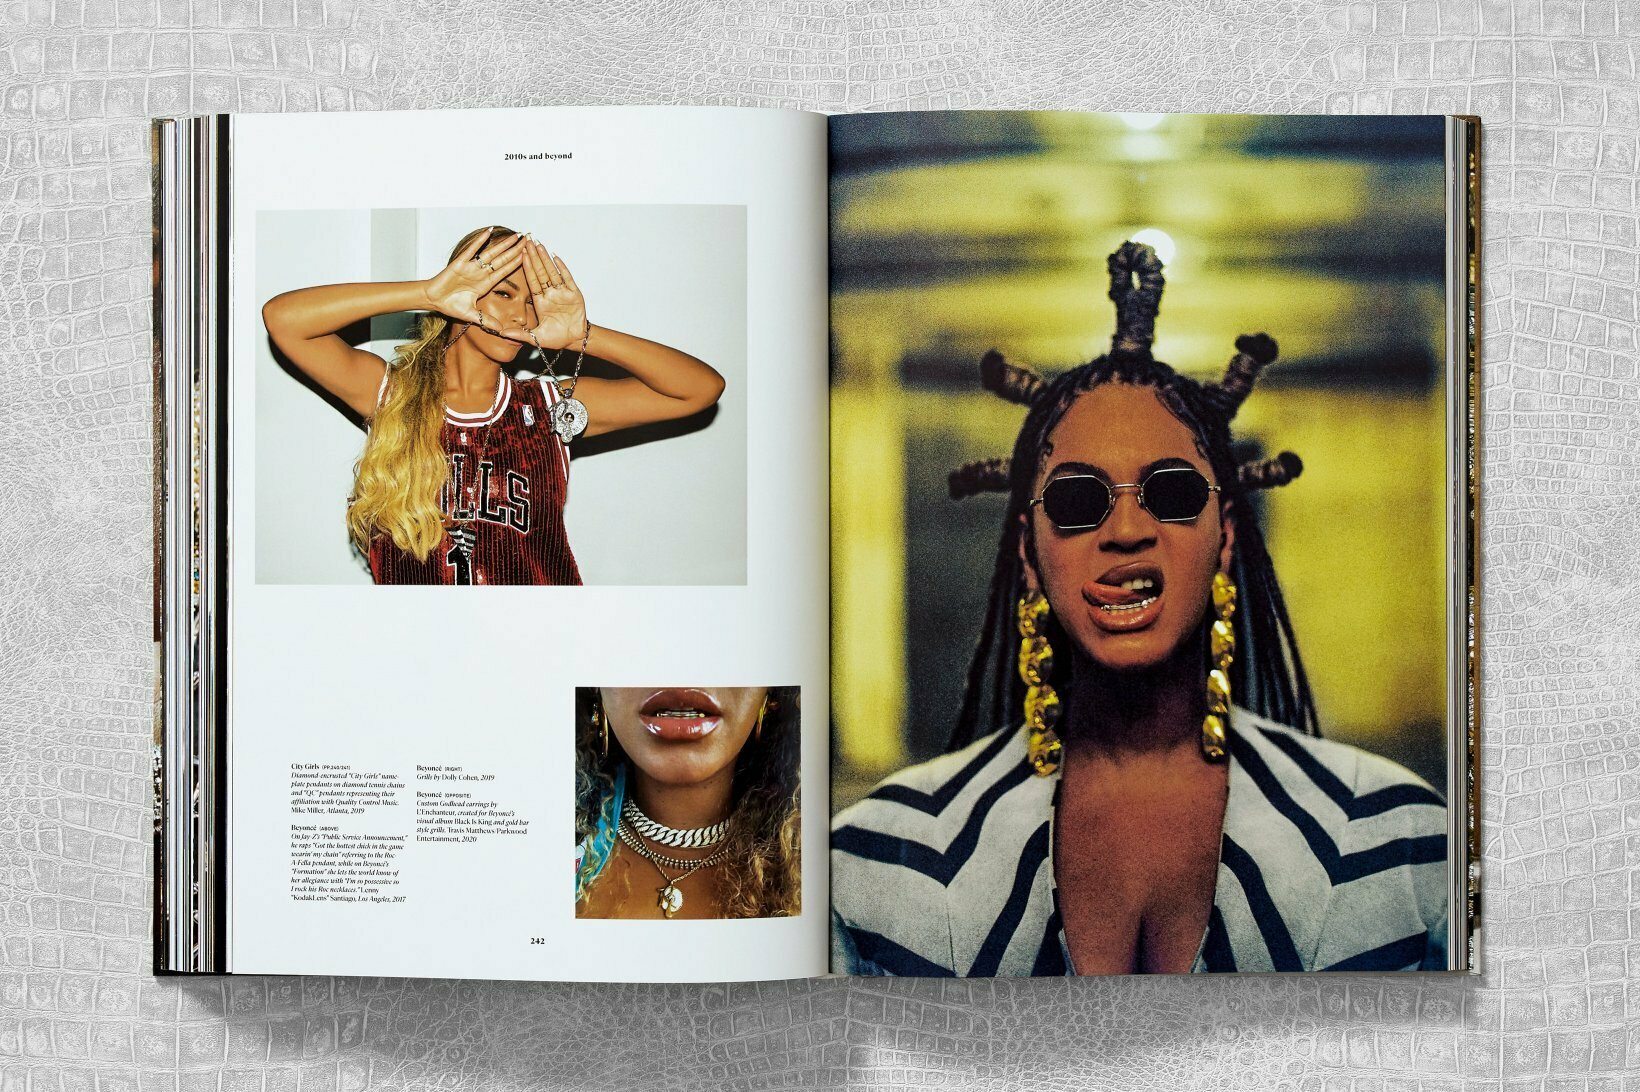 La chanteuse Beyoncé dans son album visuel “Black is King” évoquant une reine égyptienne en 2020.